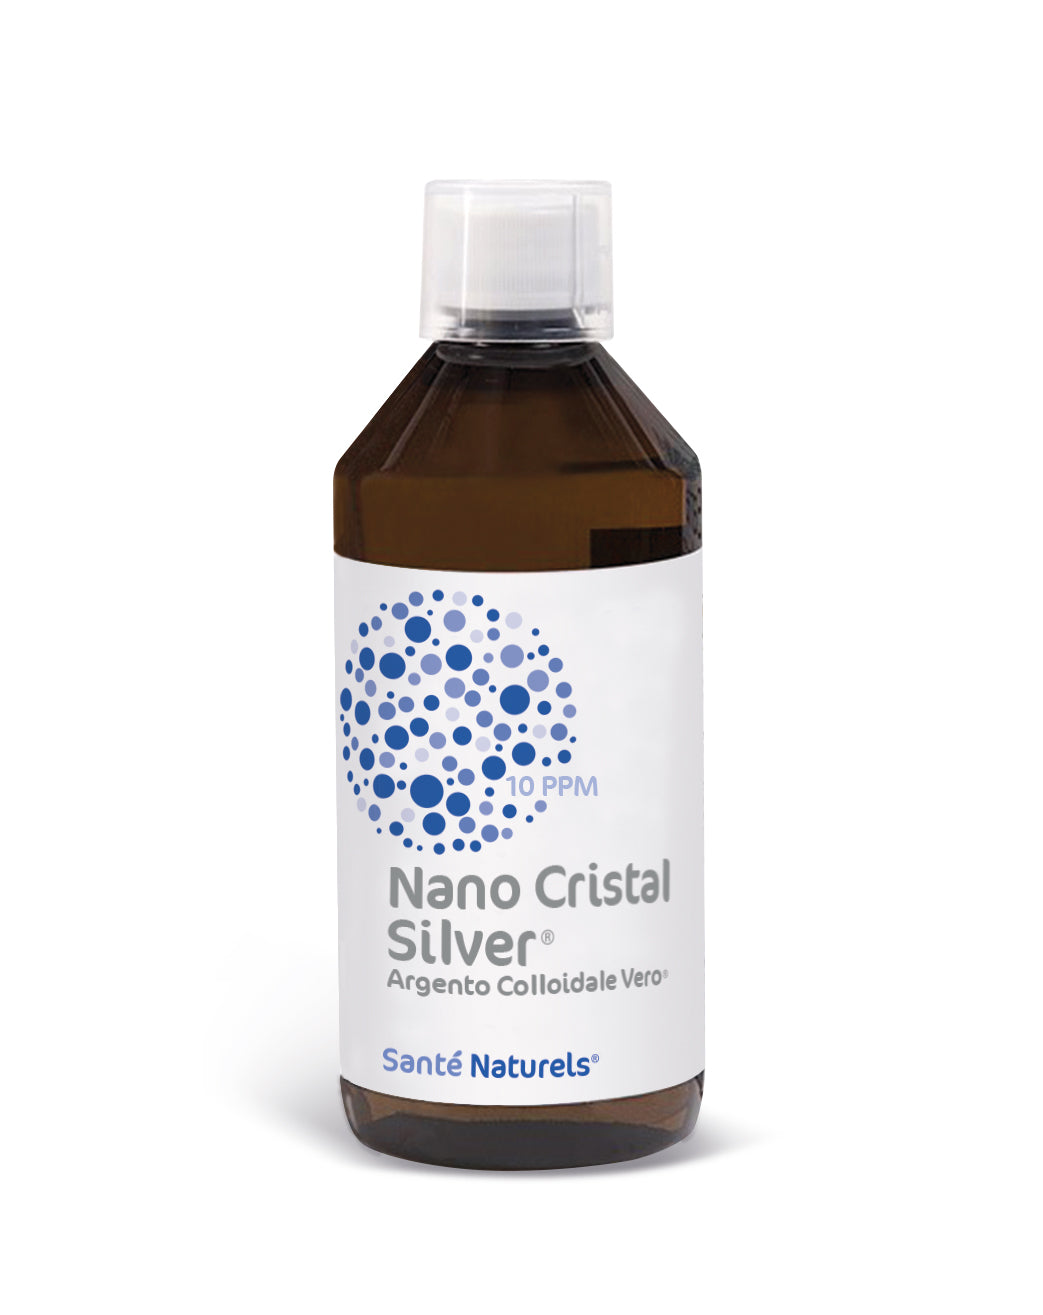 Argento Colloidale Vero® Nano Cristal Silver® 10 e 20 ppm. QUALITA' E CONVENIENZA